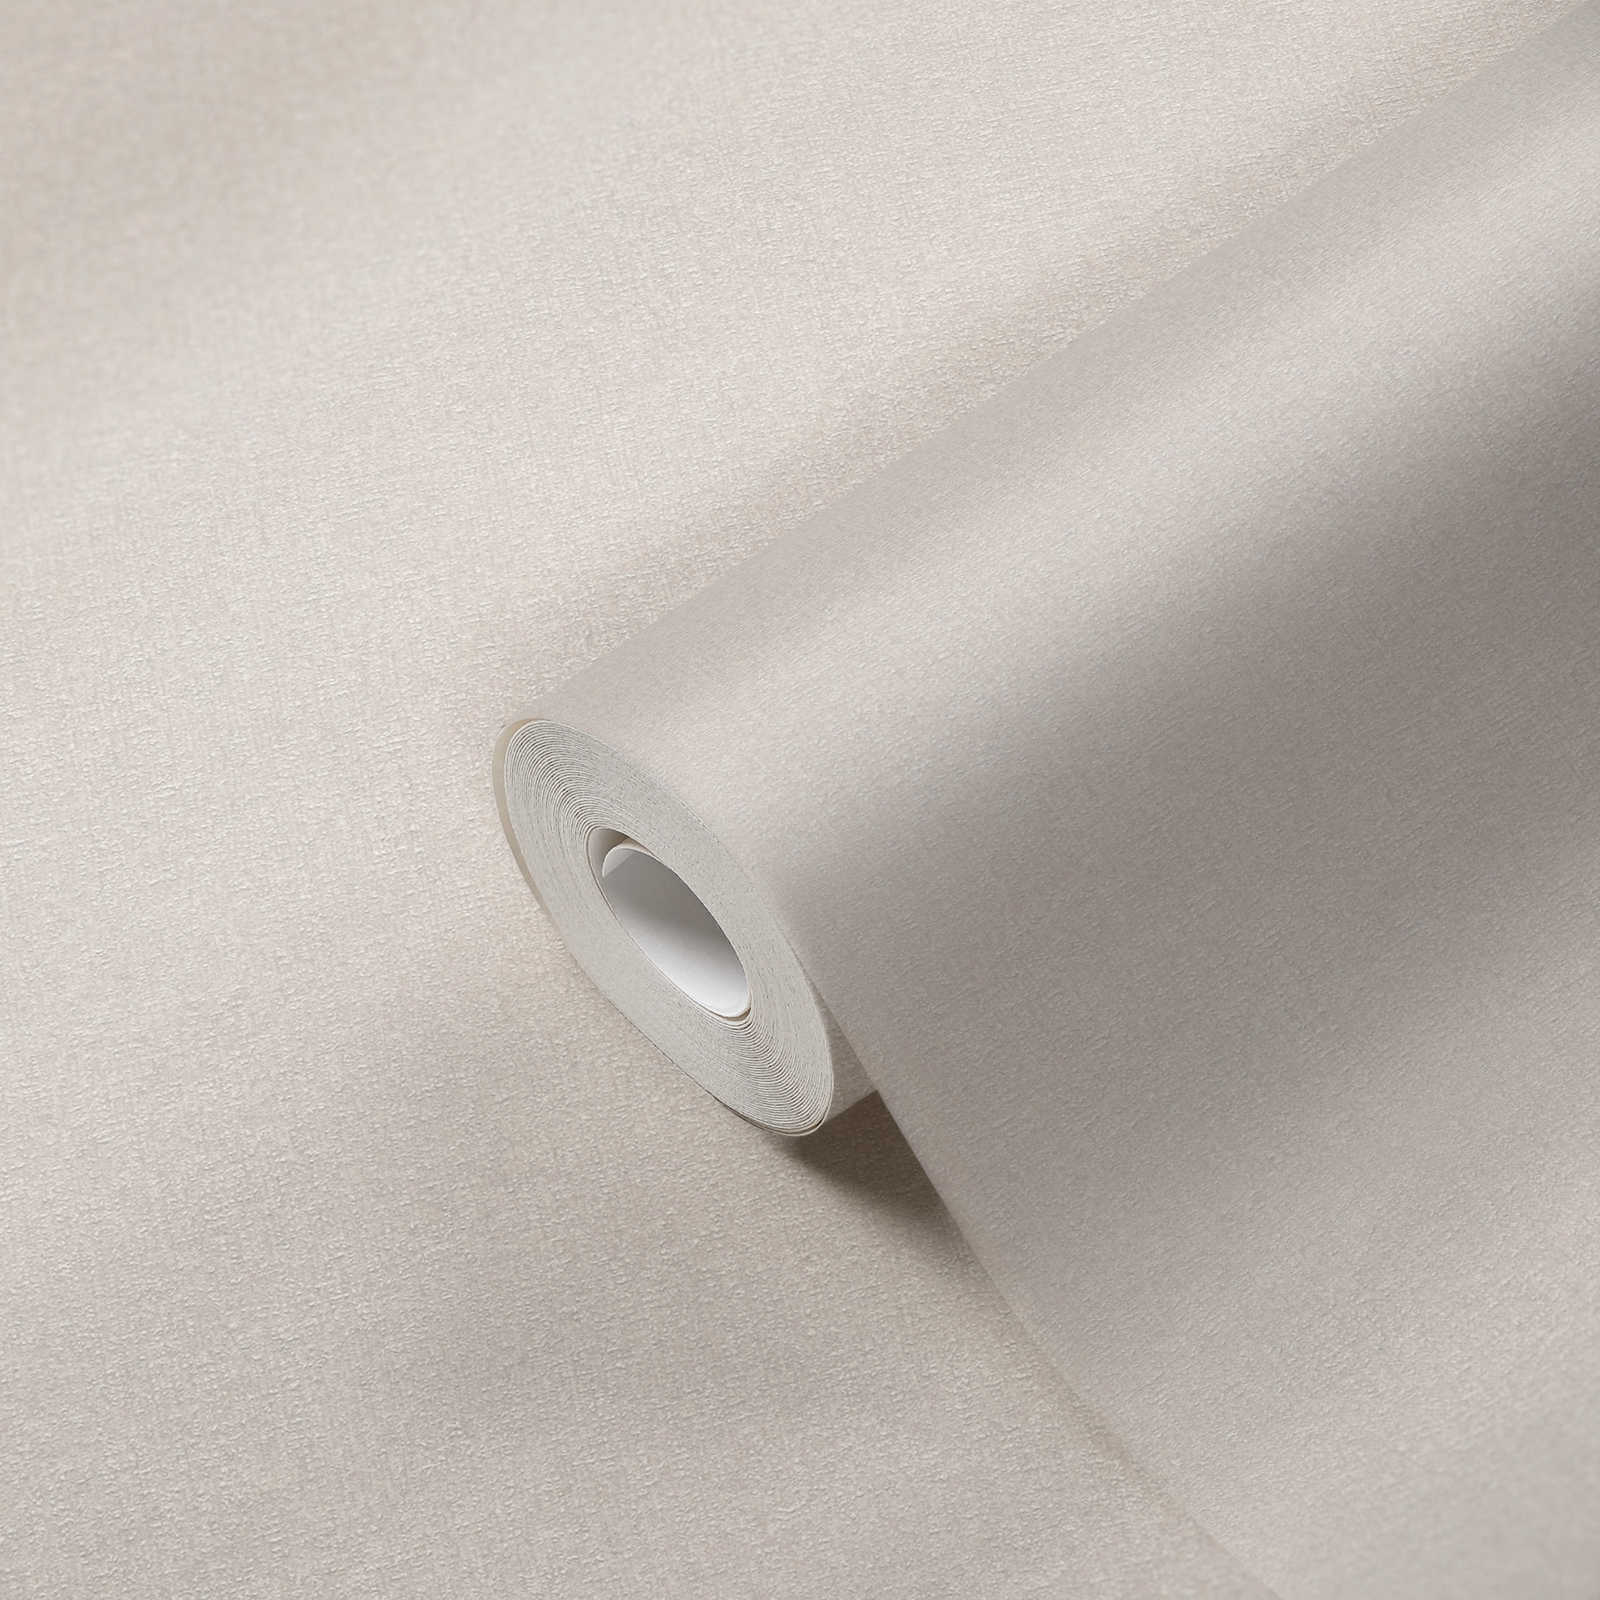             Papier peint intissé à texture fine - crème, blanc, gris
        